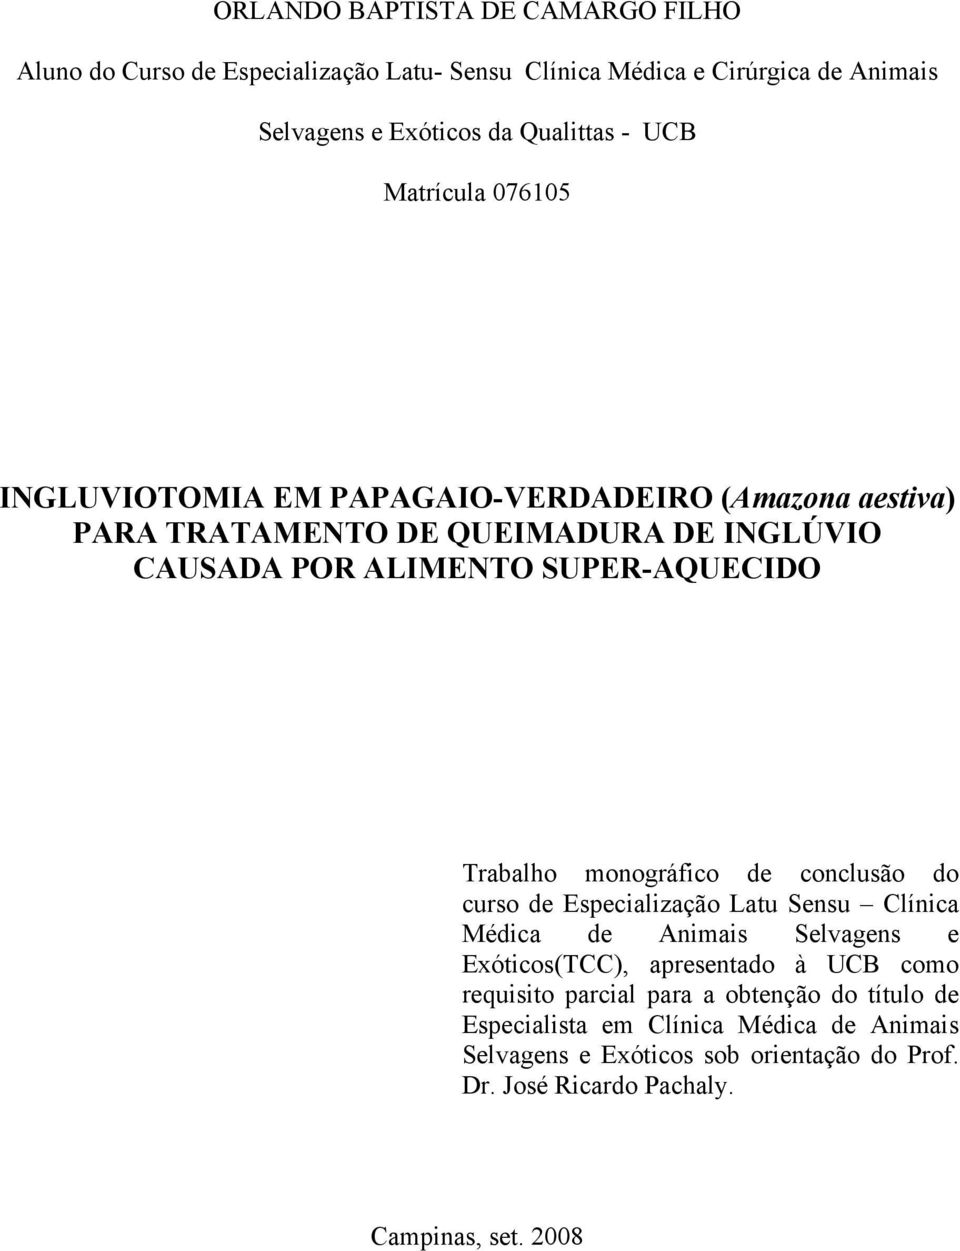 monográfico de conclusão do curso de Especialização Latu Sensu Clínica Médica de Animais Selvagens e Exóticos(TCC), apresentado à UCB como requisito parcial